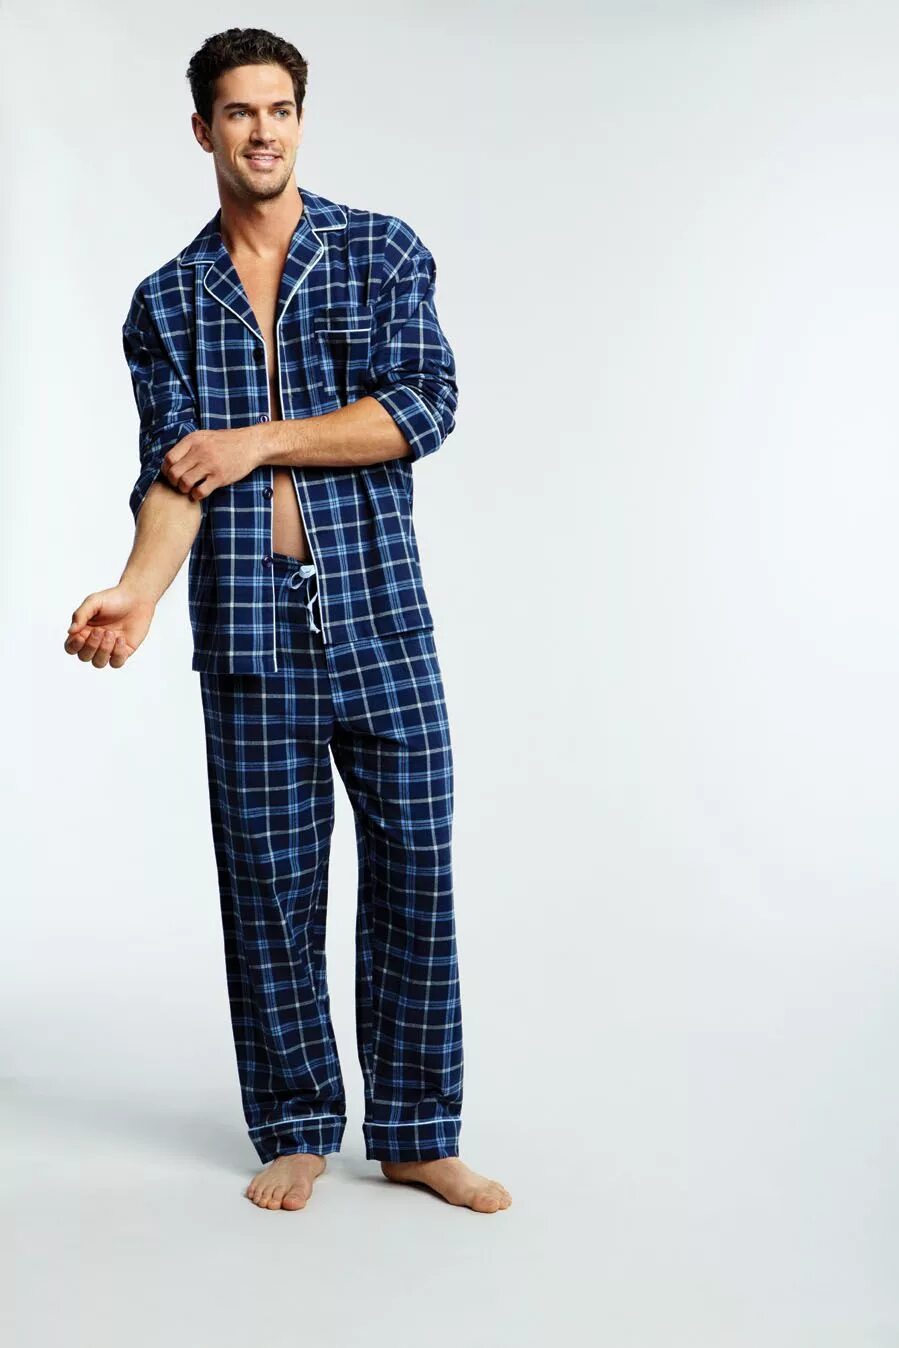 Men's Pajamas. Pajama. Men Pyjamas. Nautica Sleepwear. Many suits lethal company